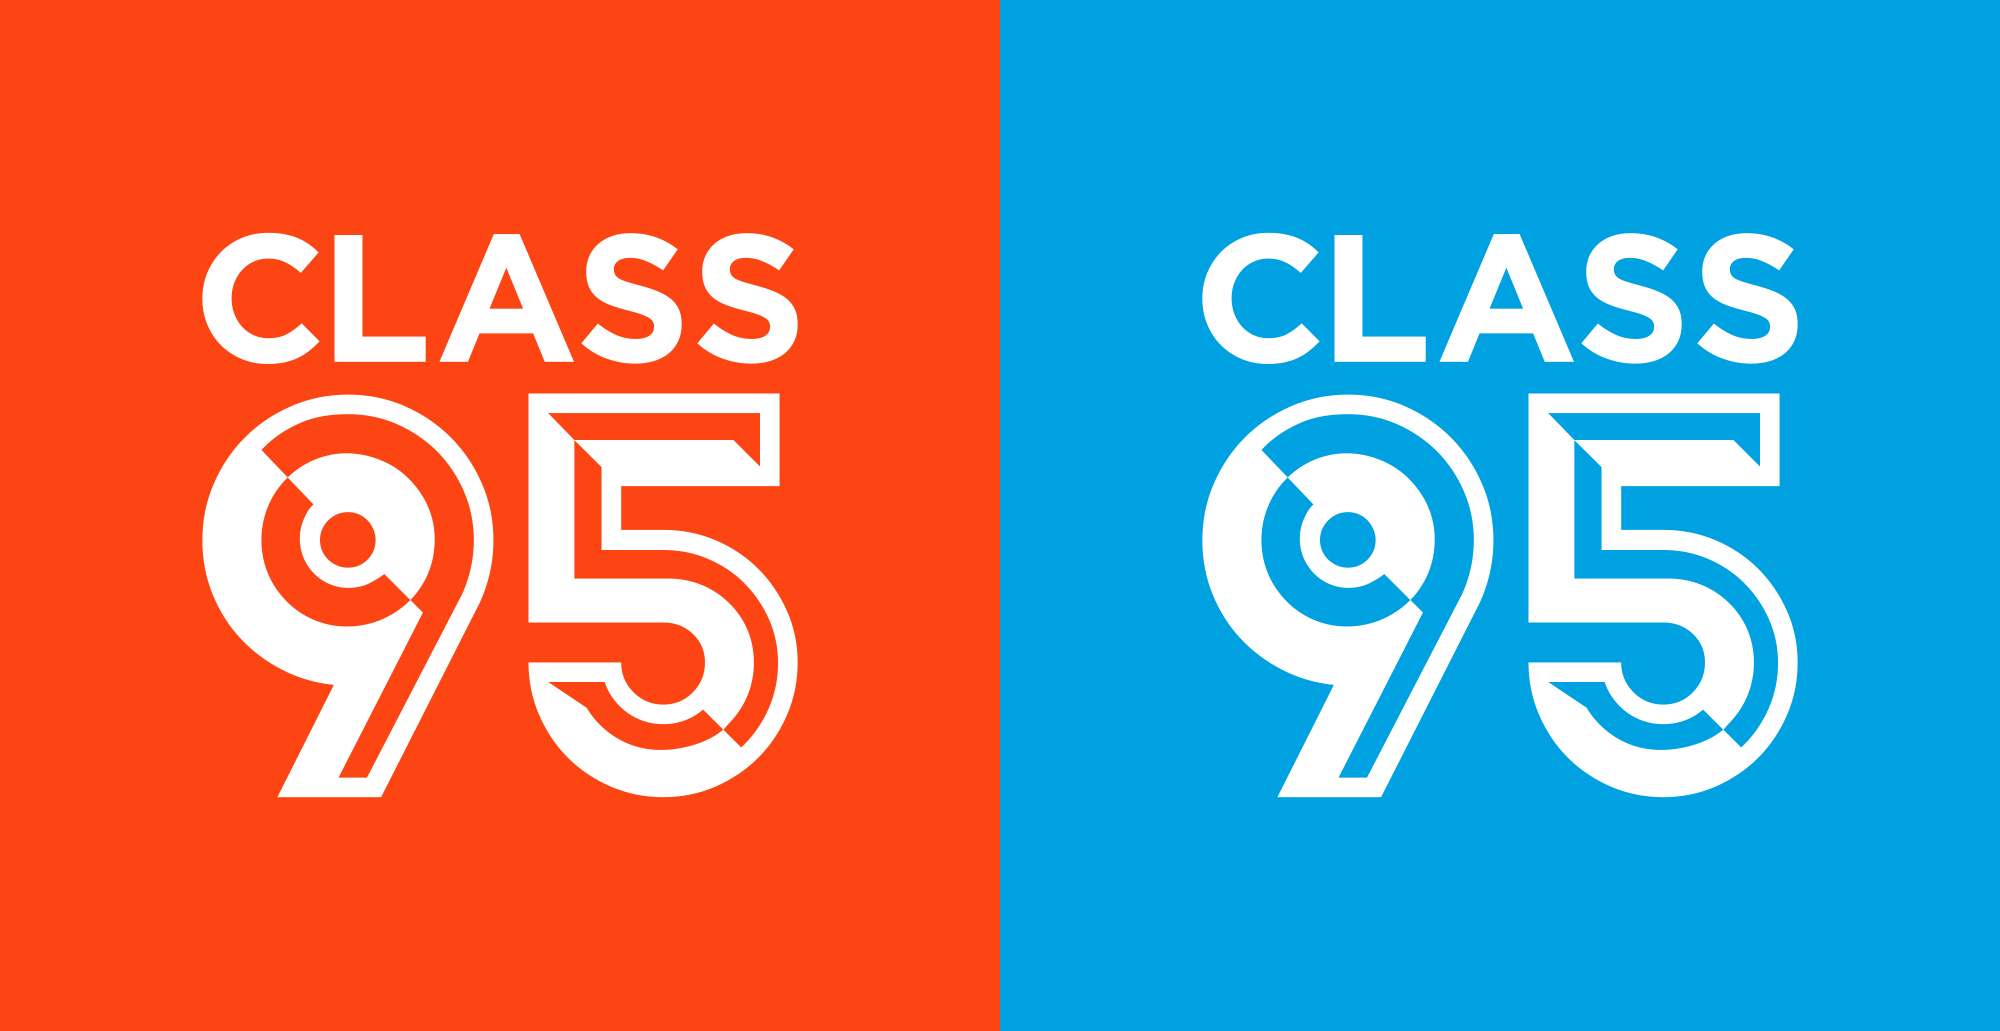 Class 95 LogoAlt Colours.jpg